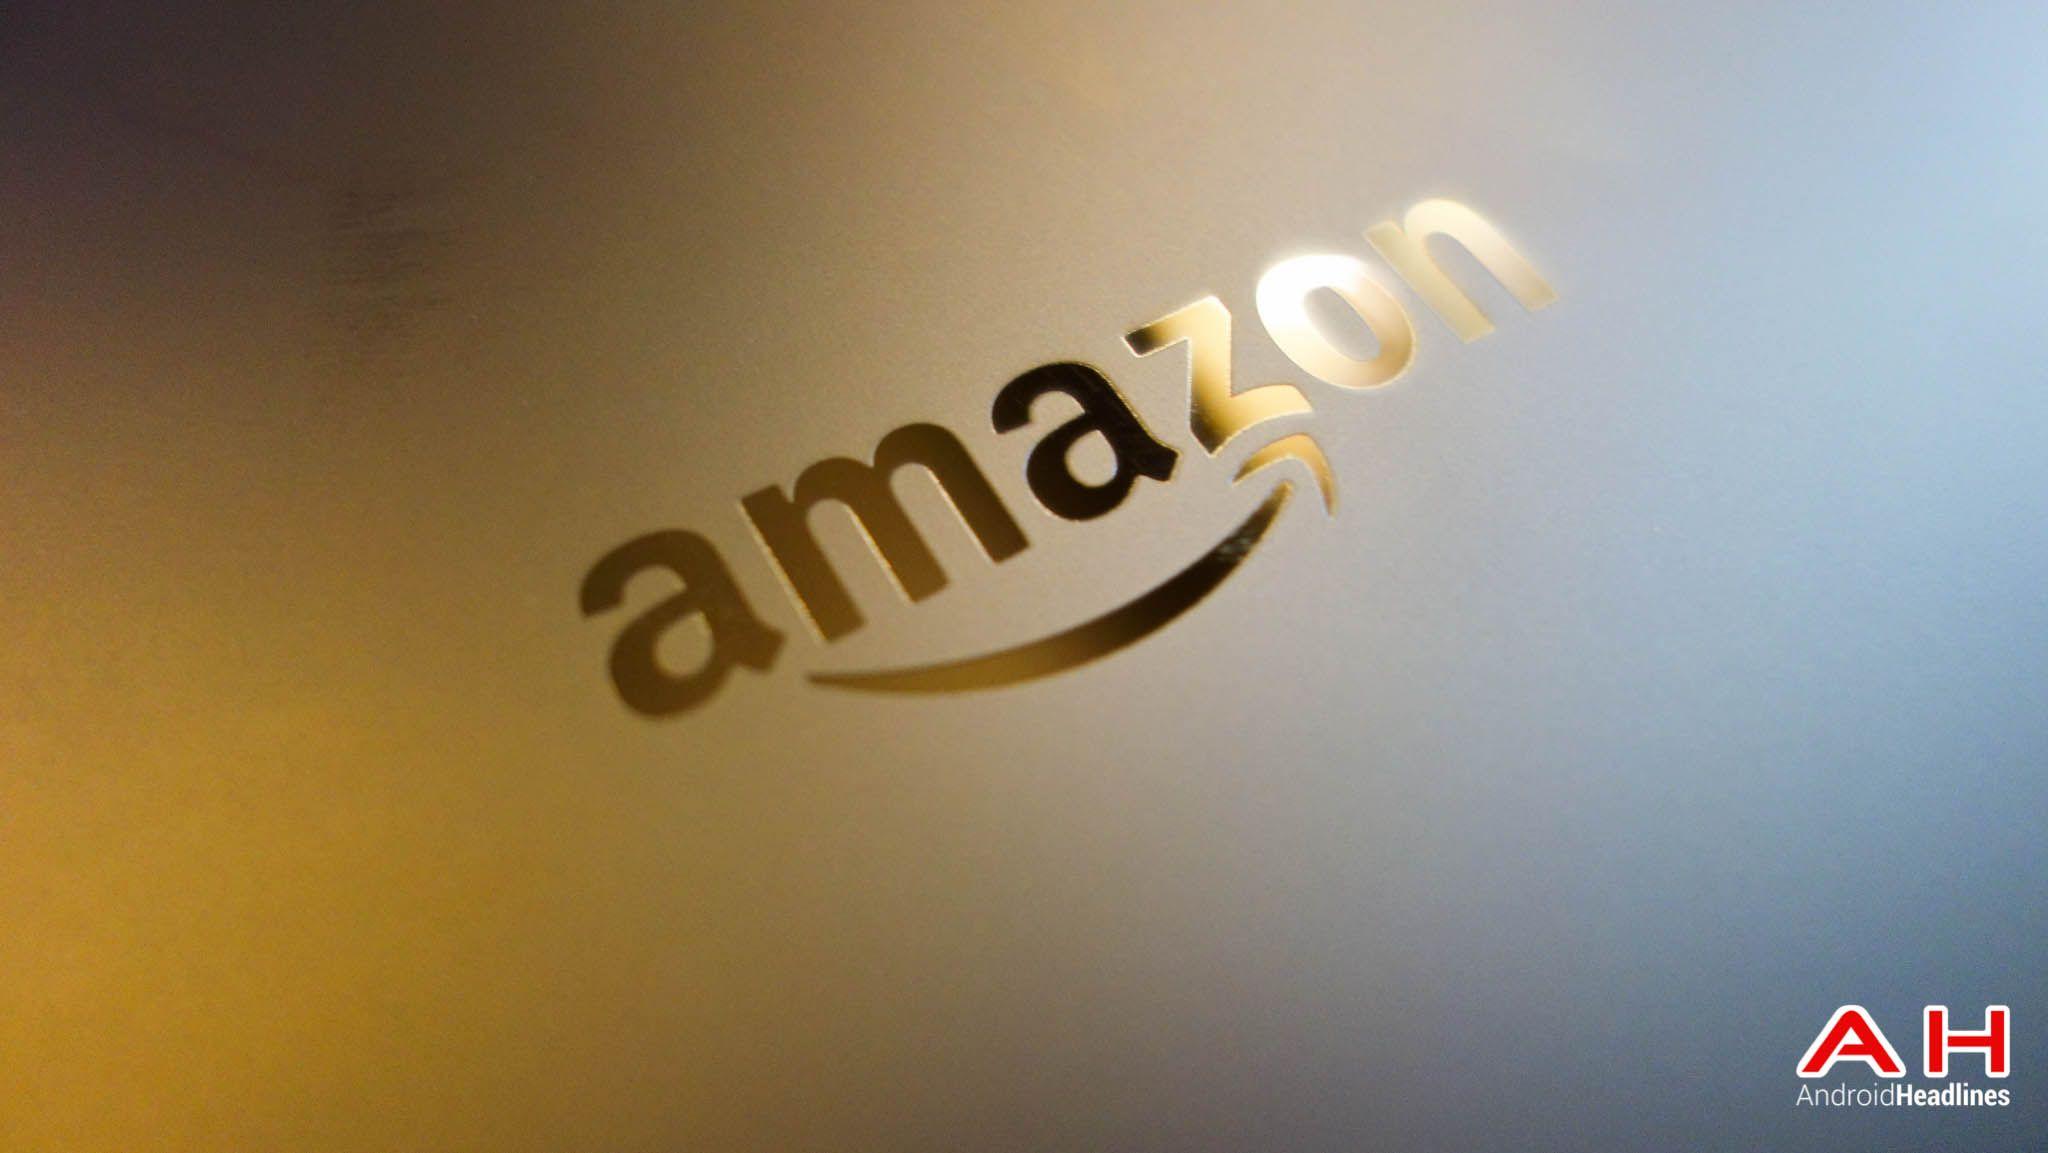 Cool Amazon Logo - Amazon Add #AmazonWishCart To Their Twitter Easy Buy Service